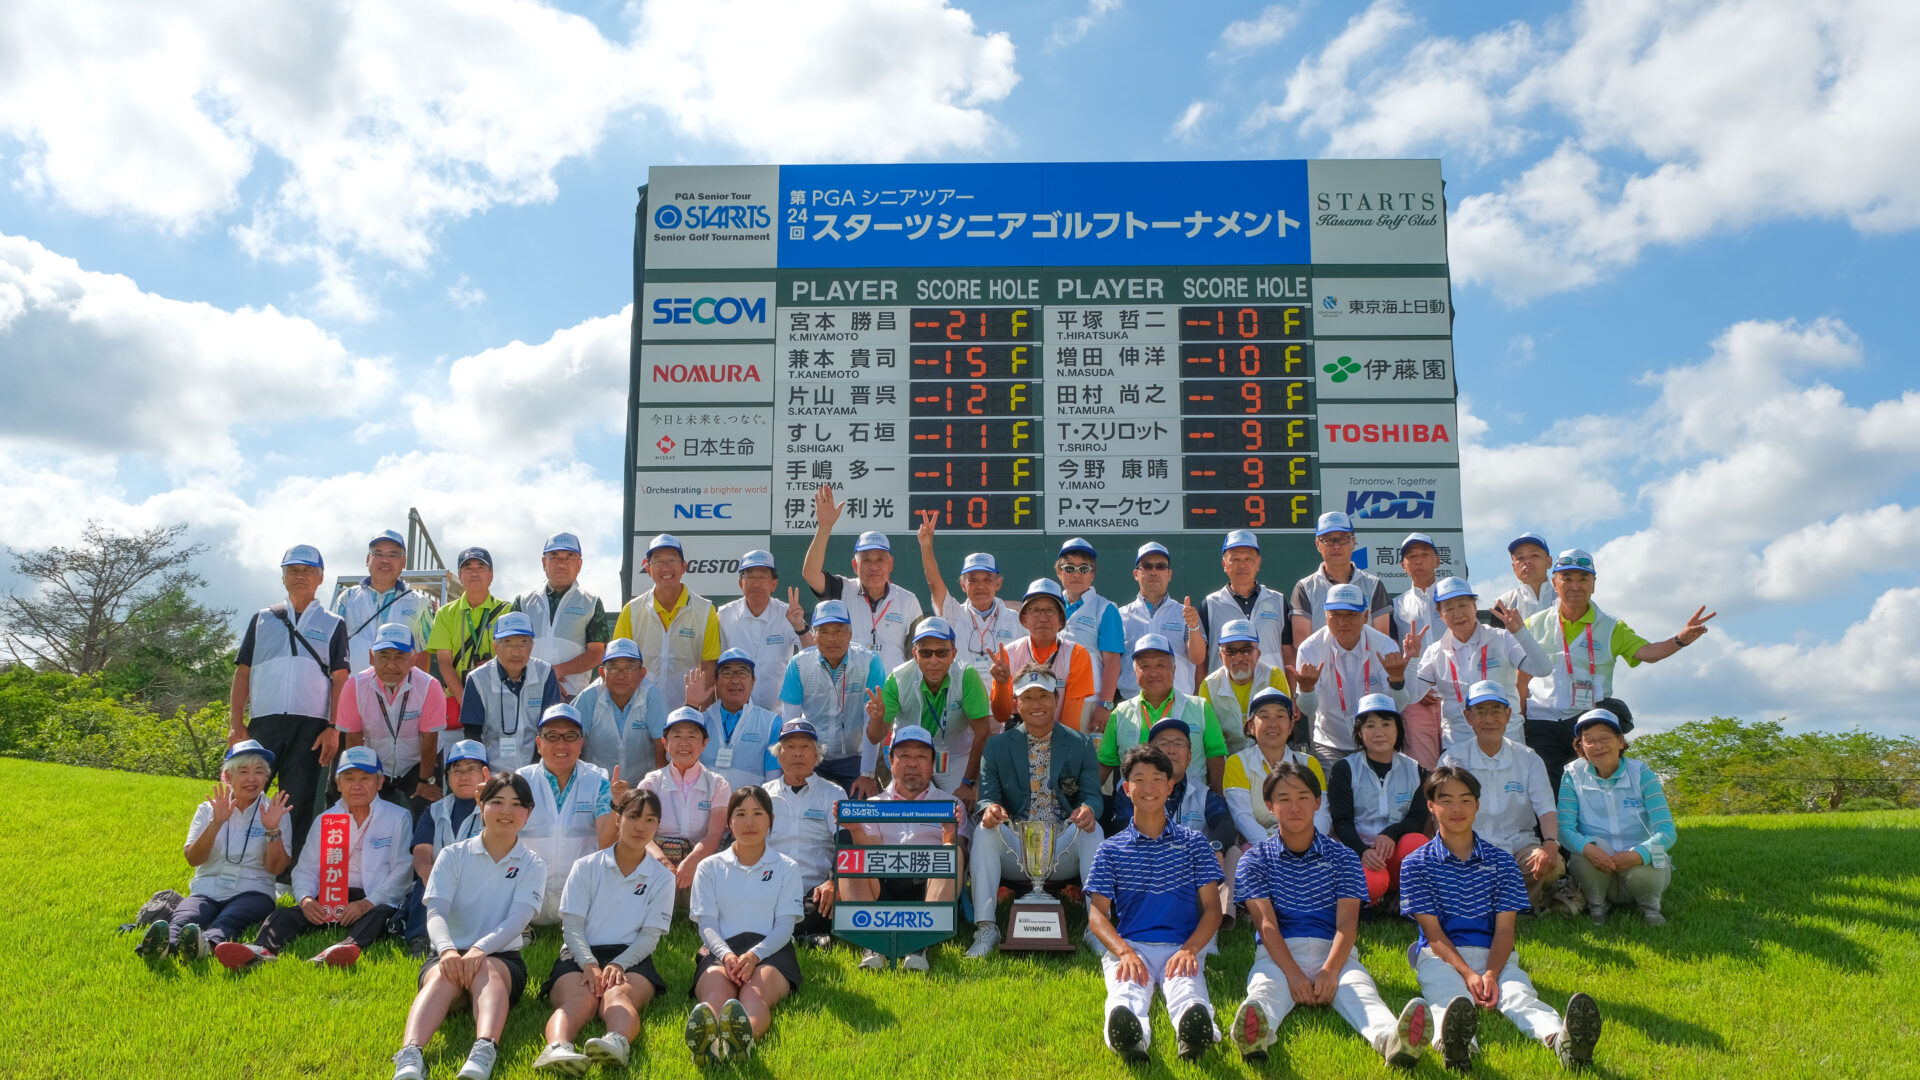 第24回スターツシニアゴルフトーナメント【競技運営・ボランティア事務局業務】